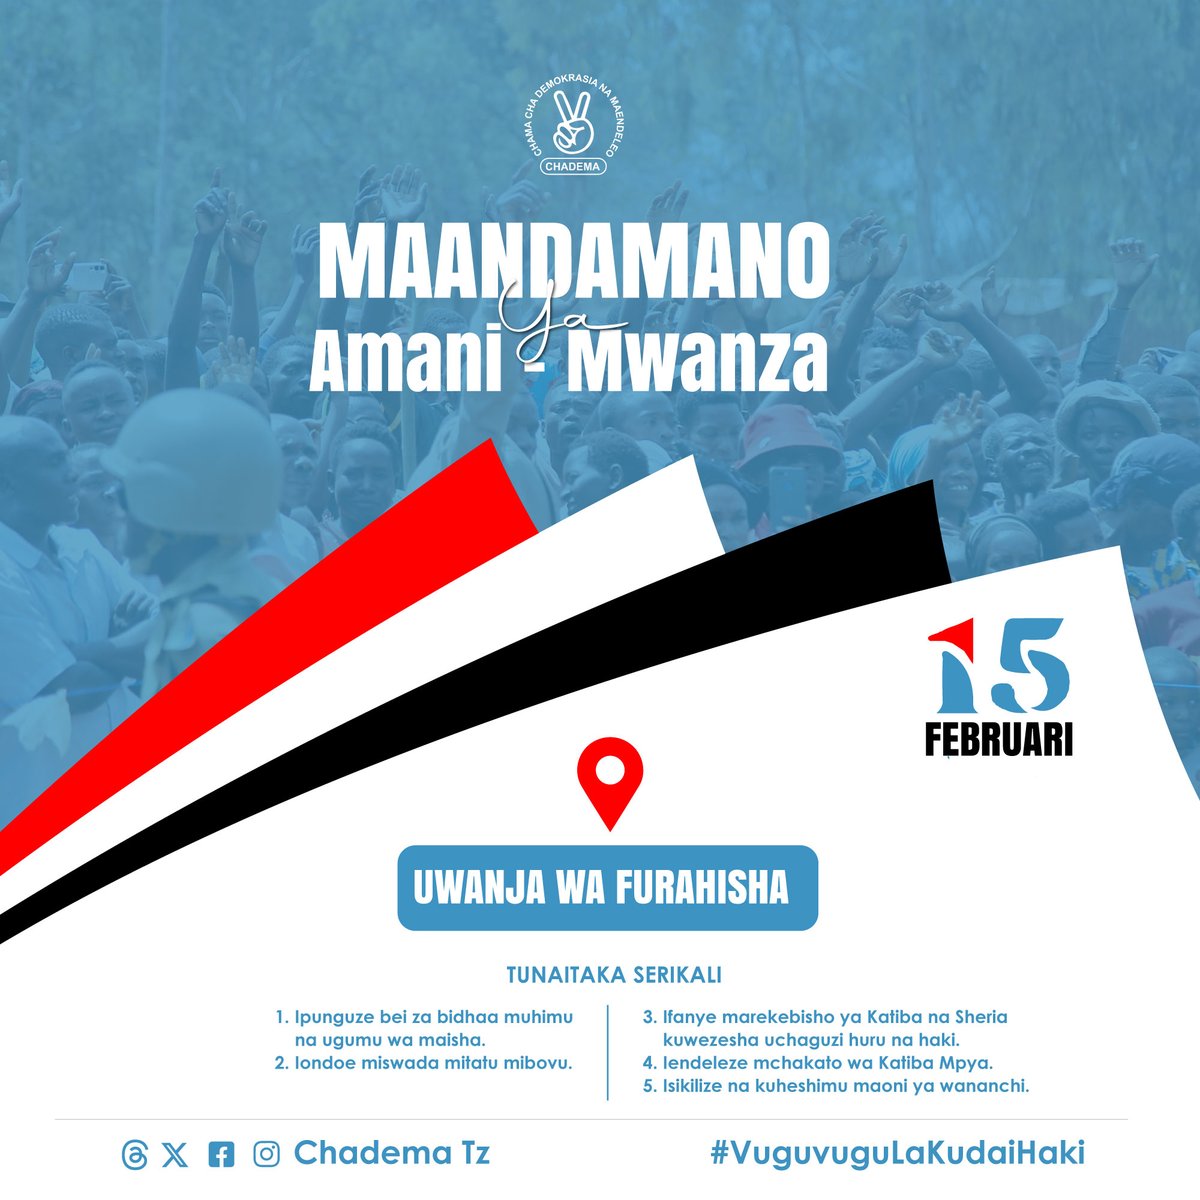 Tarehe 15 Februari 2024 l, Chama kitaongoza watanzania katika maandamano ya amani yatakayofanyika katika Jiji la Mwanza. Maandamano hayo yatahitimishwa katika uwanja wa Furahisha. #VuguvuguLaKudaiHaki